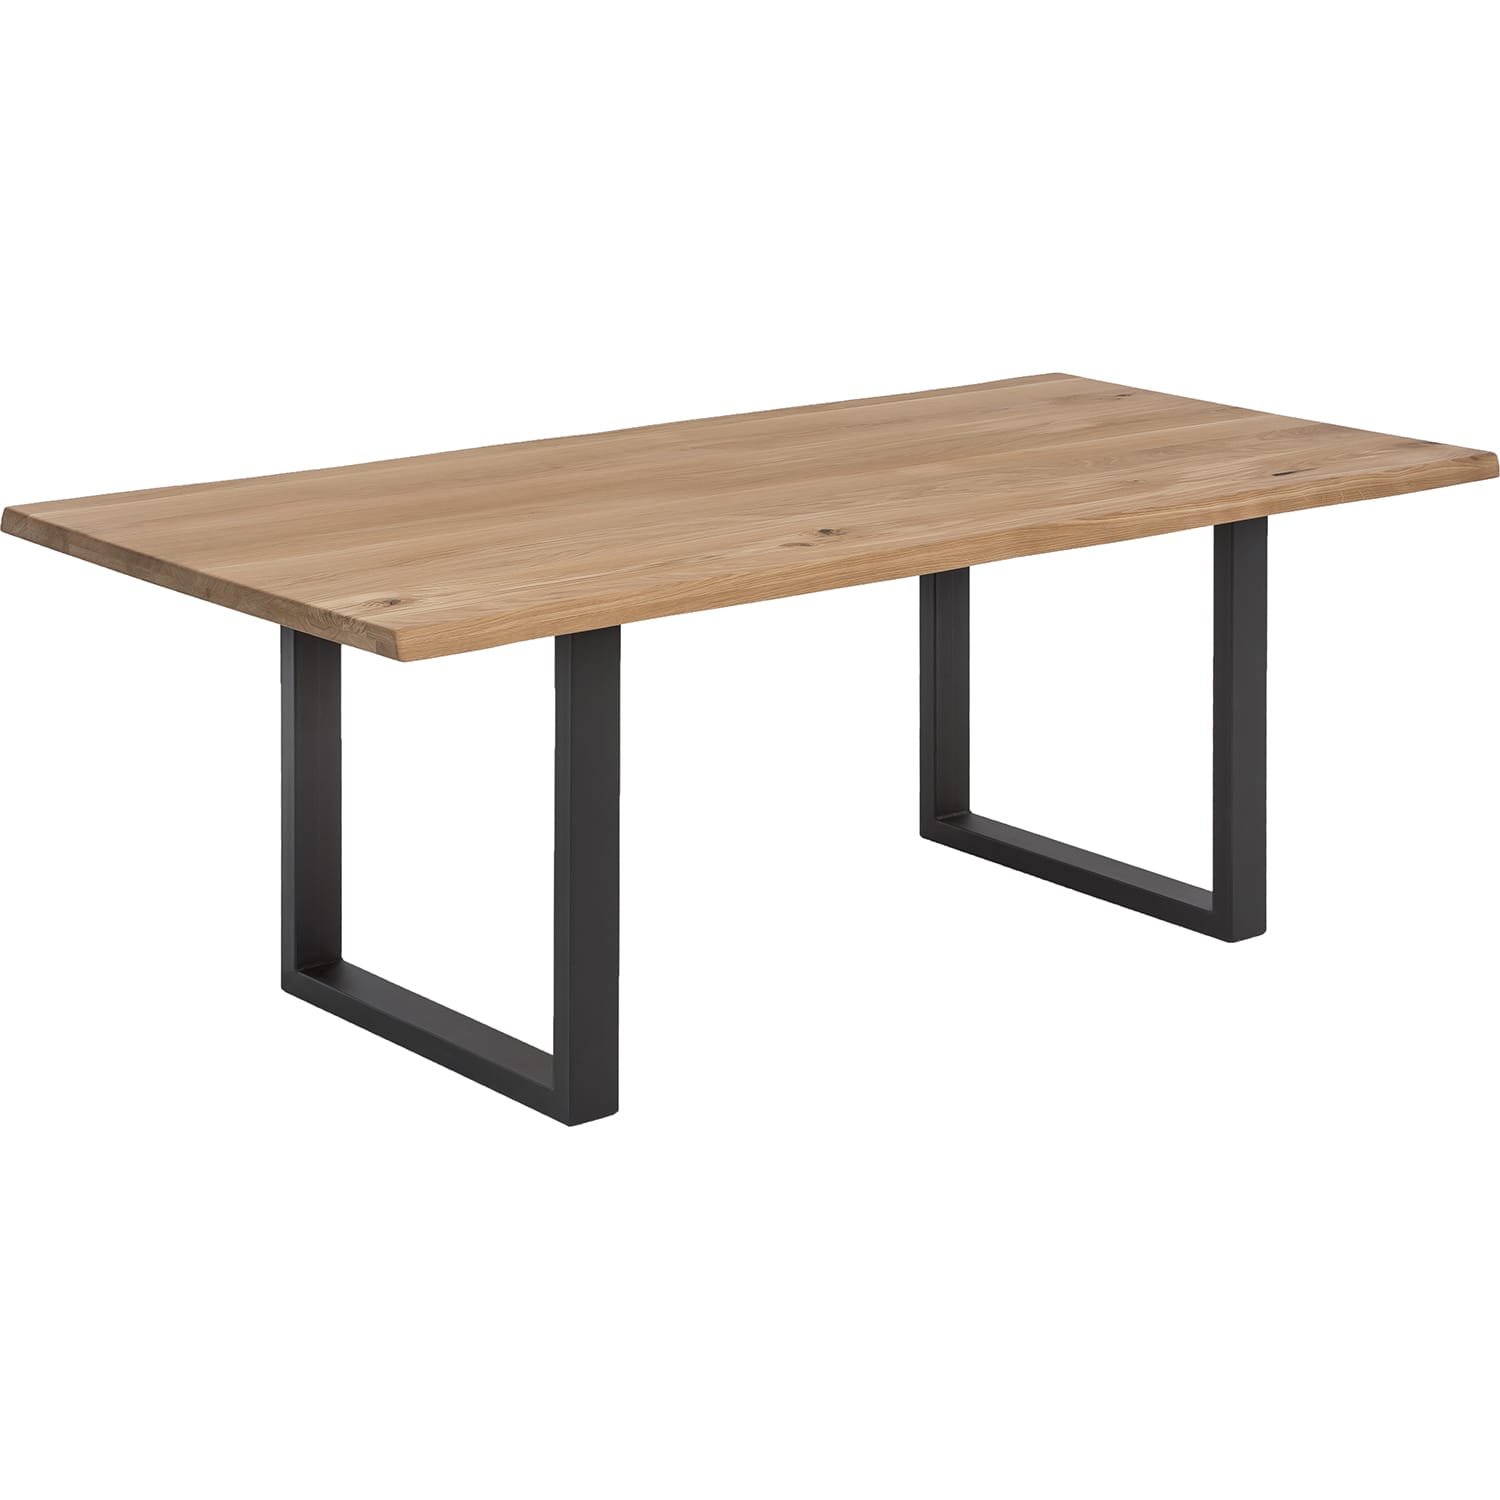 | | Möbel mutoni Tische natur | antikschwarz 120x80 möbel Esstische Tisch Metall Massivholztische Wildeiche | |